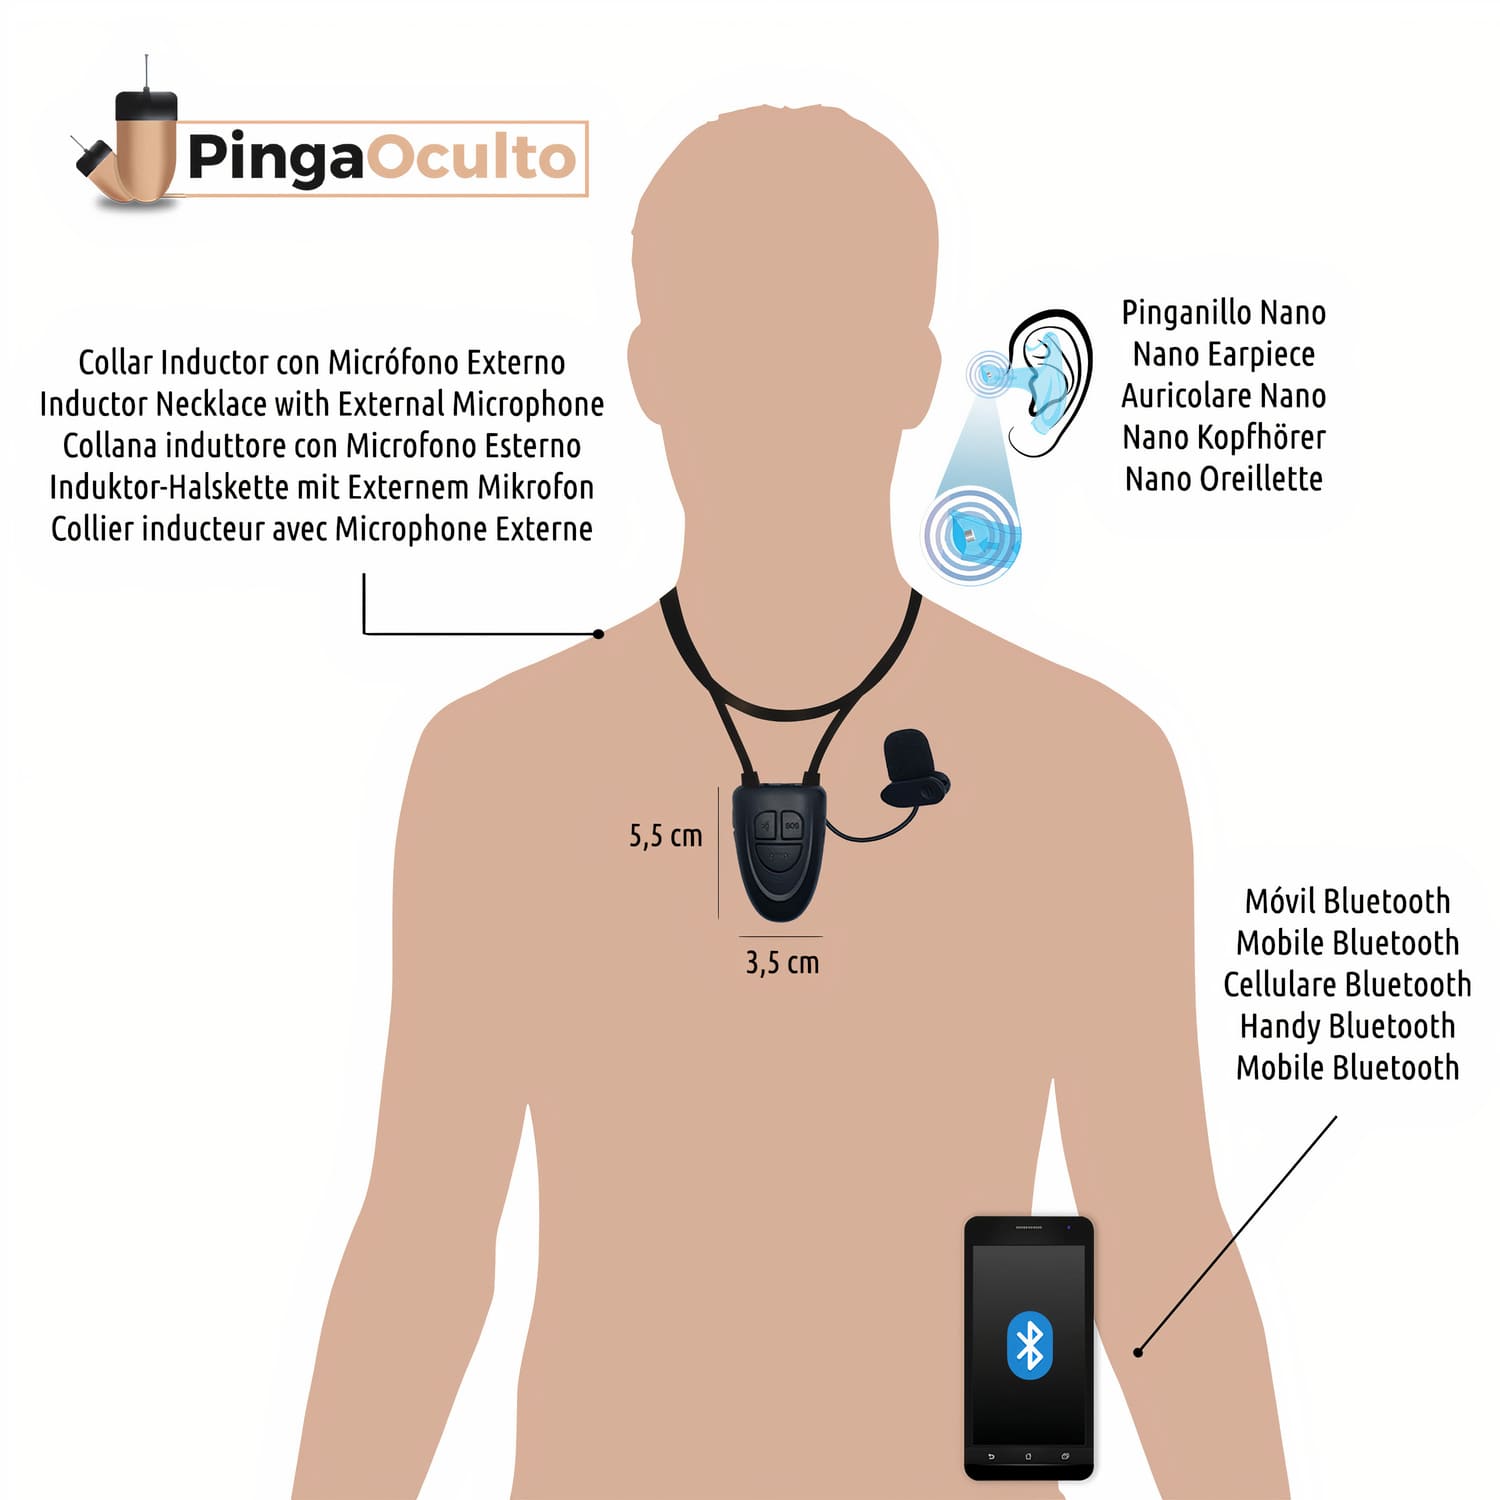 Auricolare Nano V5 - PingaOculto ®